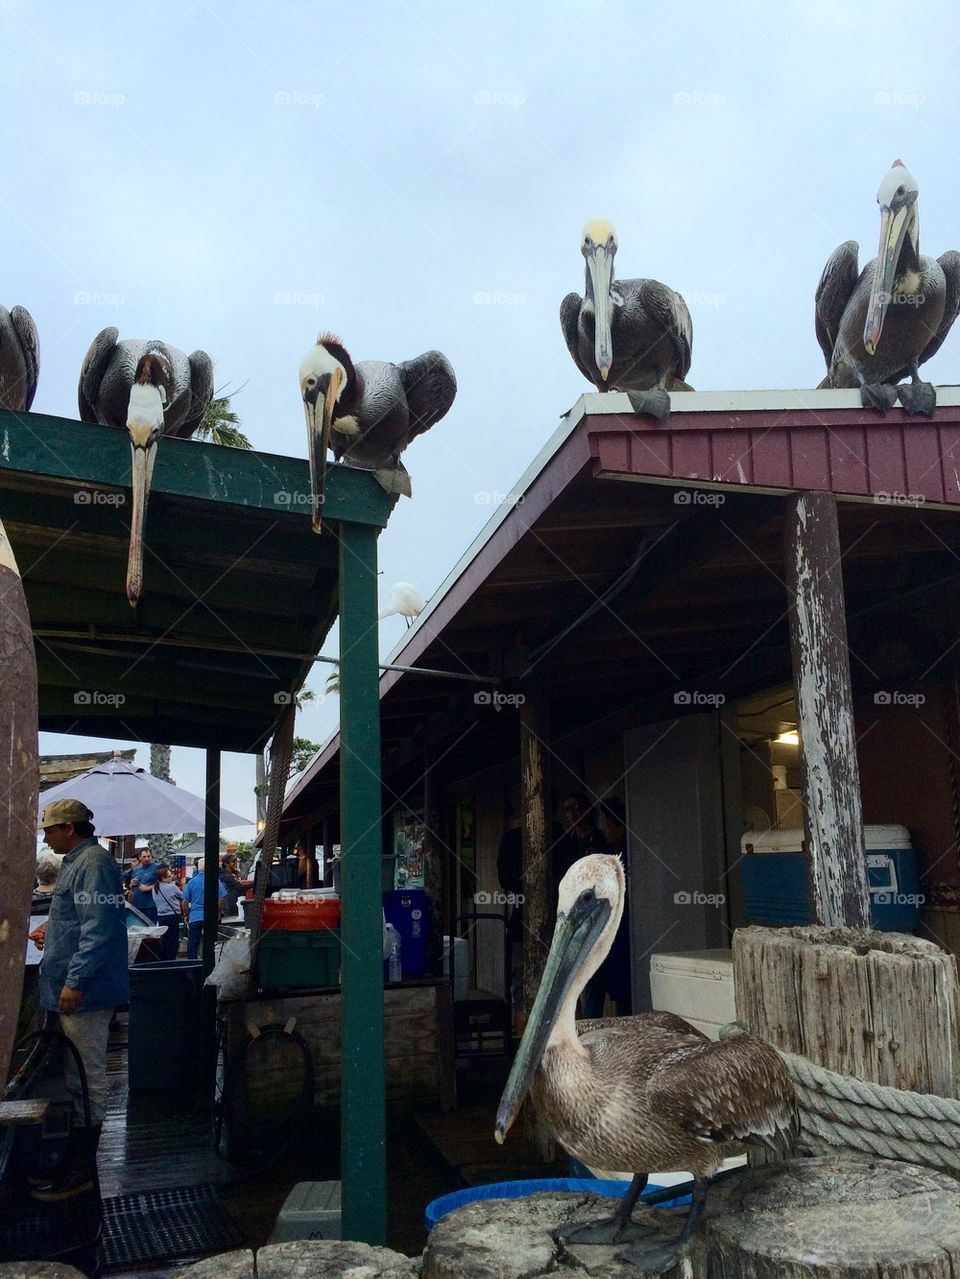 Pelicans begging for scraps